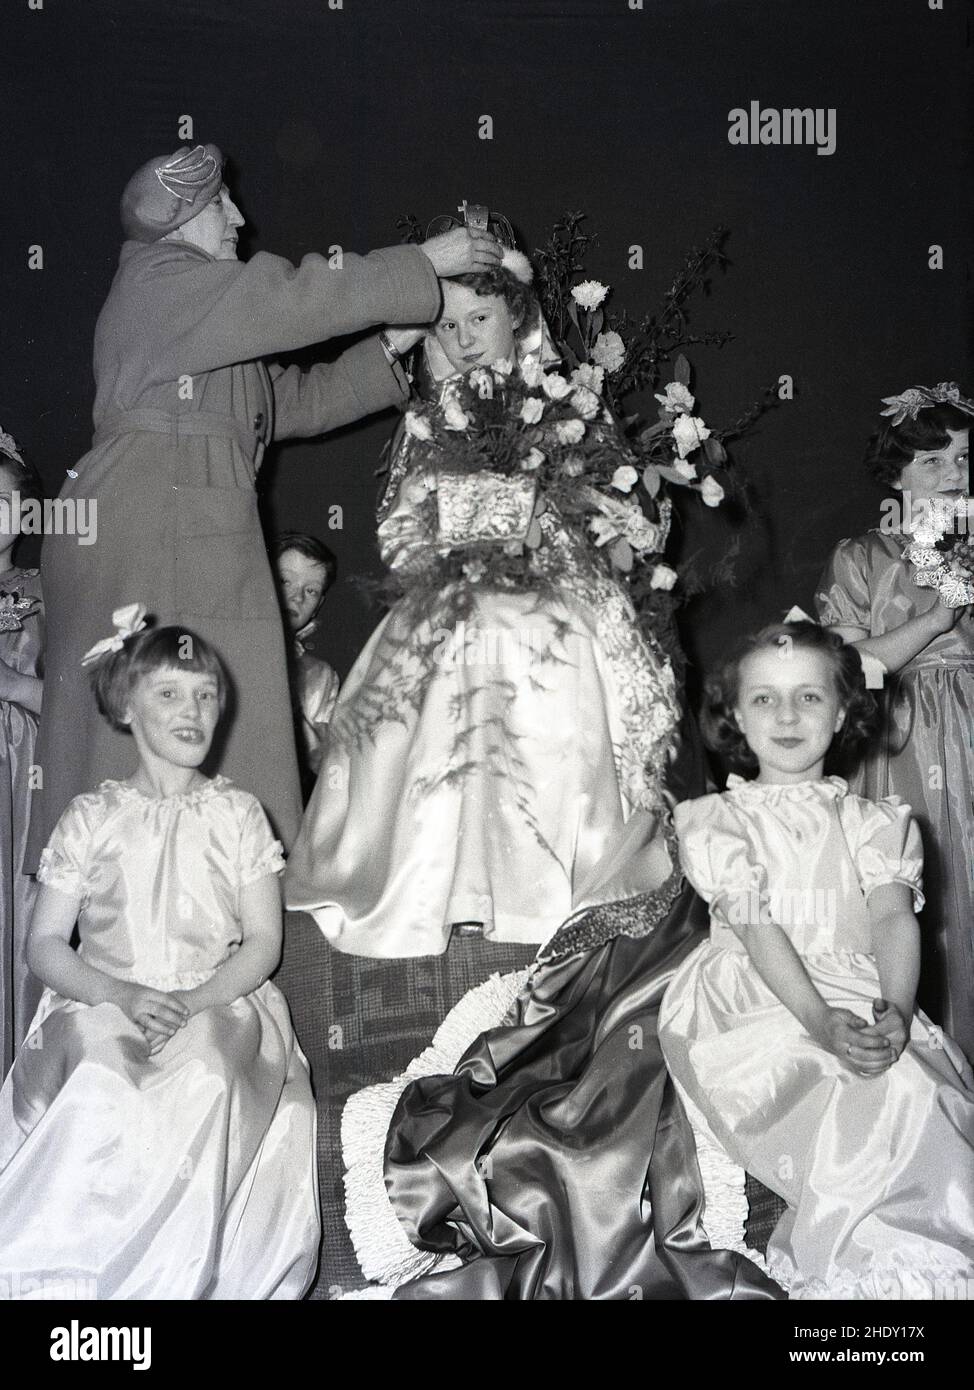 1950s, historique, une dame ajustant la couronne sur la tête d'une jeune fille, la Reine de mai récemment couronnée, Angleterre, Royaume-Uni. Banque D'Images